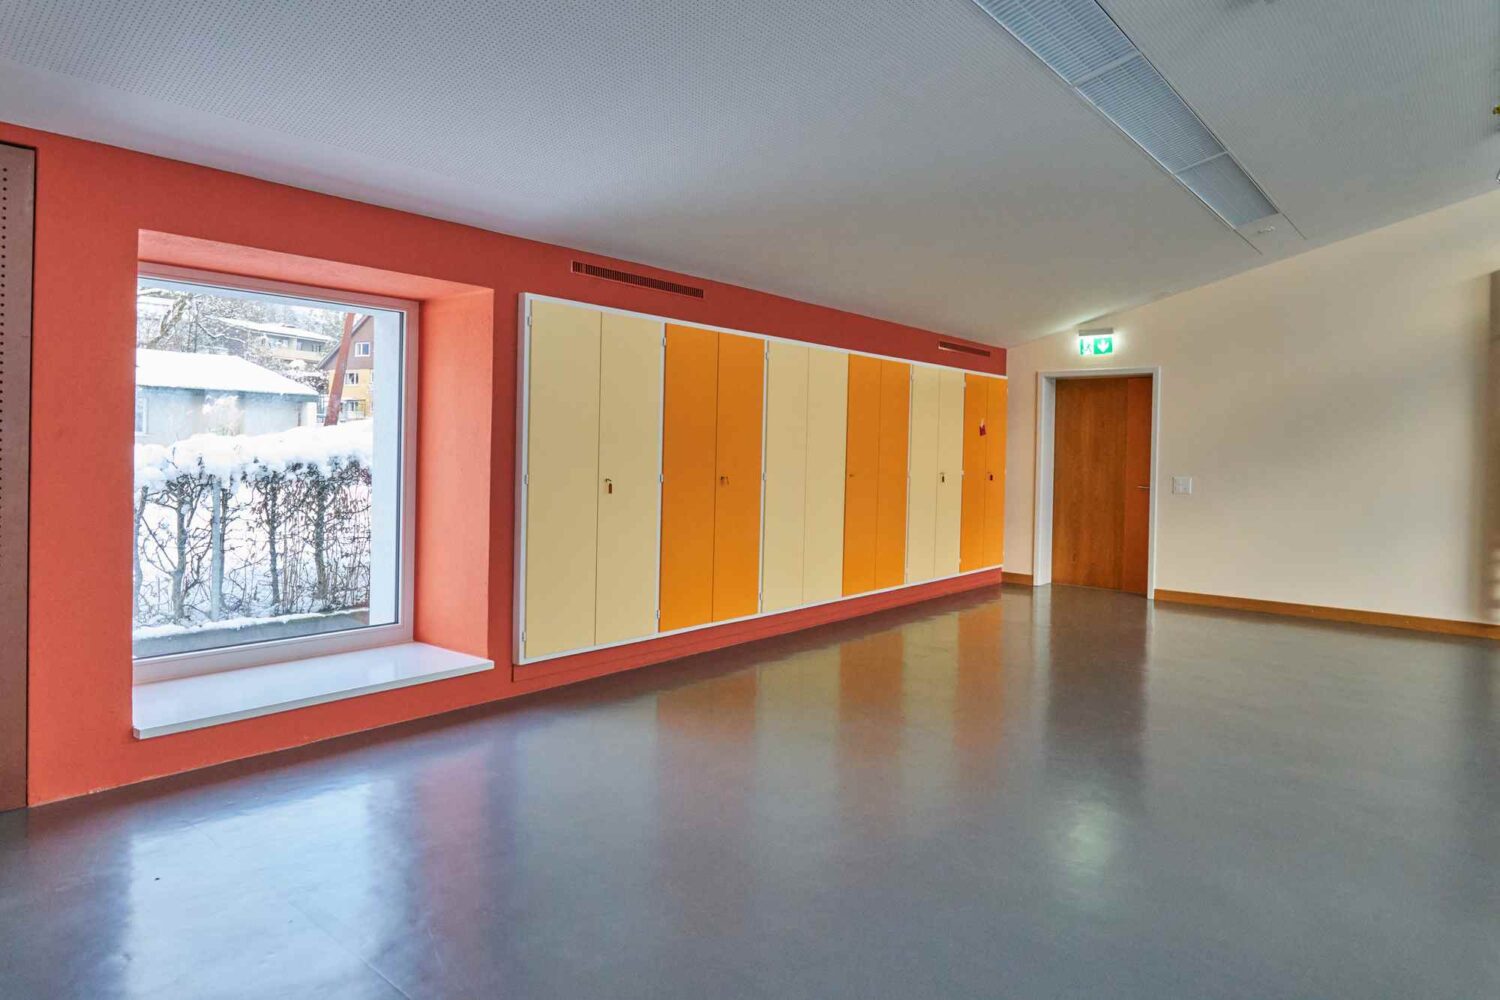 Solothurner Spitäler AG, Farbkonzept Schulungsräume der Kinder- und Jugendpsychiatrie